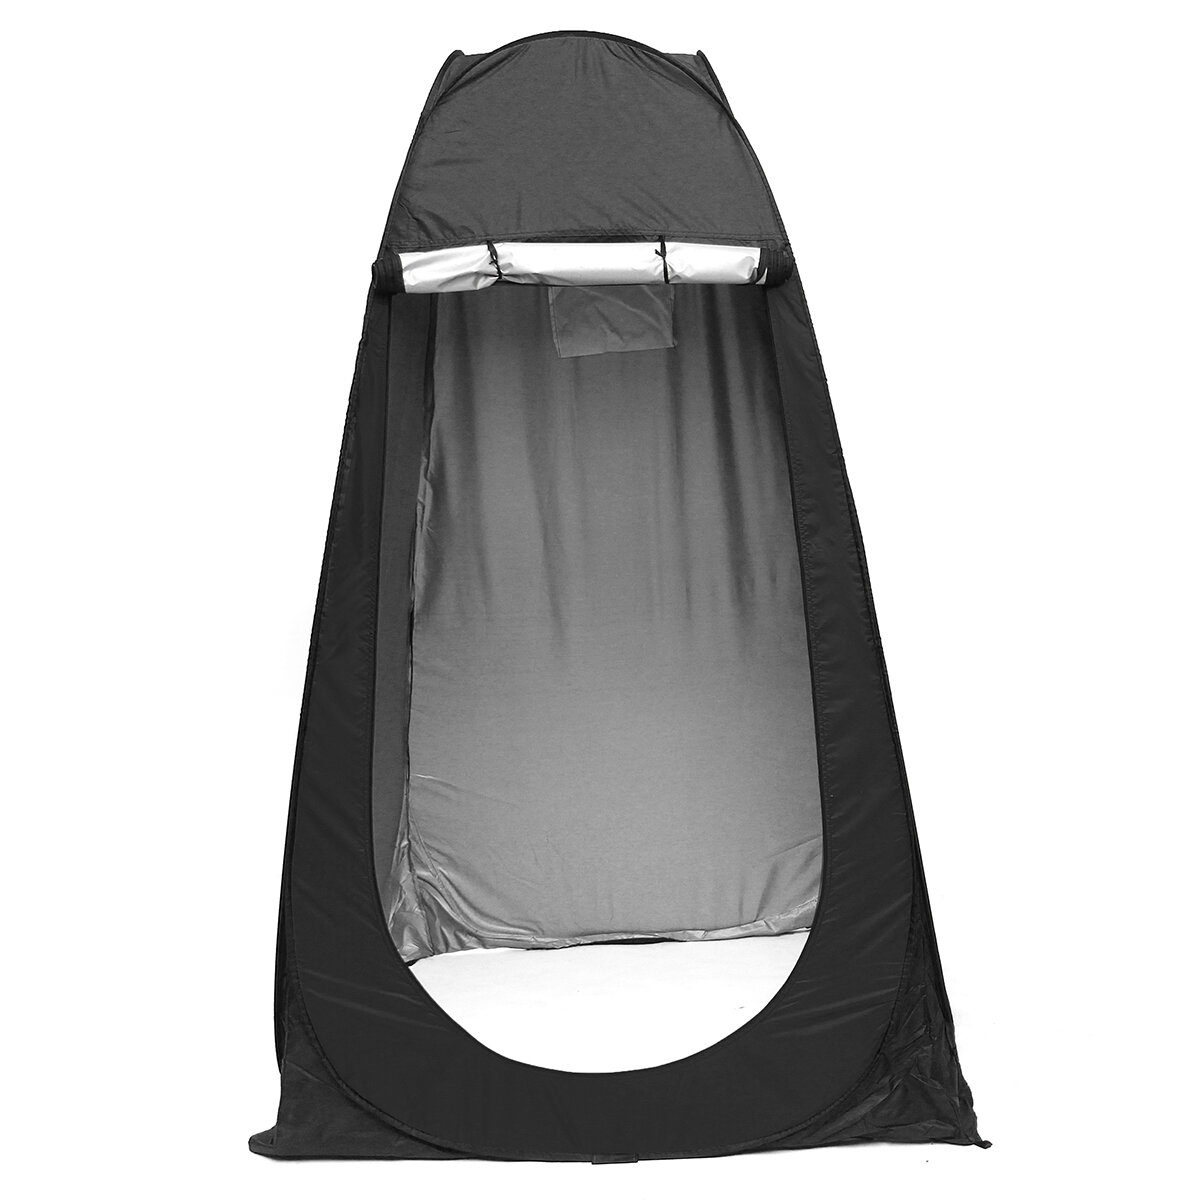 1-2 человека На открытом воздухе Кемпинг Автоматическая палатка Переносная навесная раздевалка Водонепроницаемы UV Защита